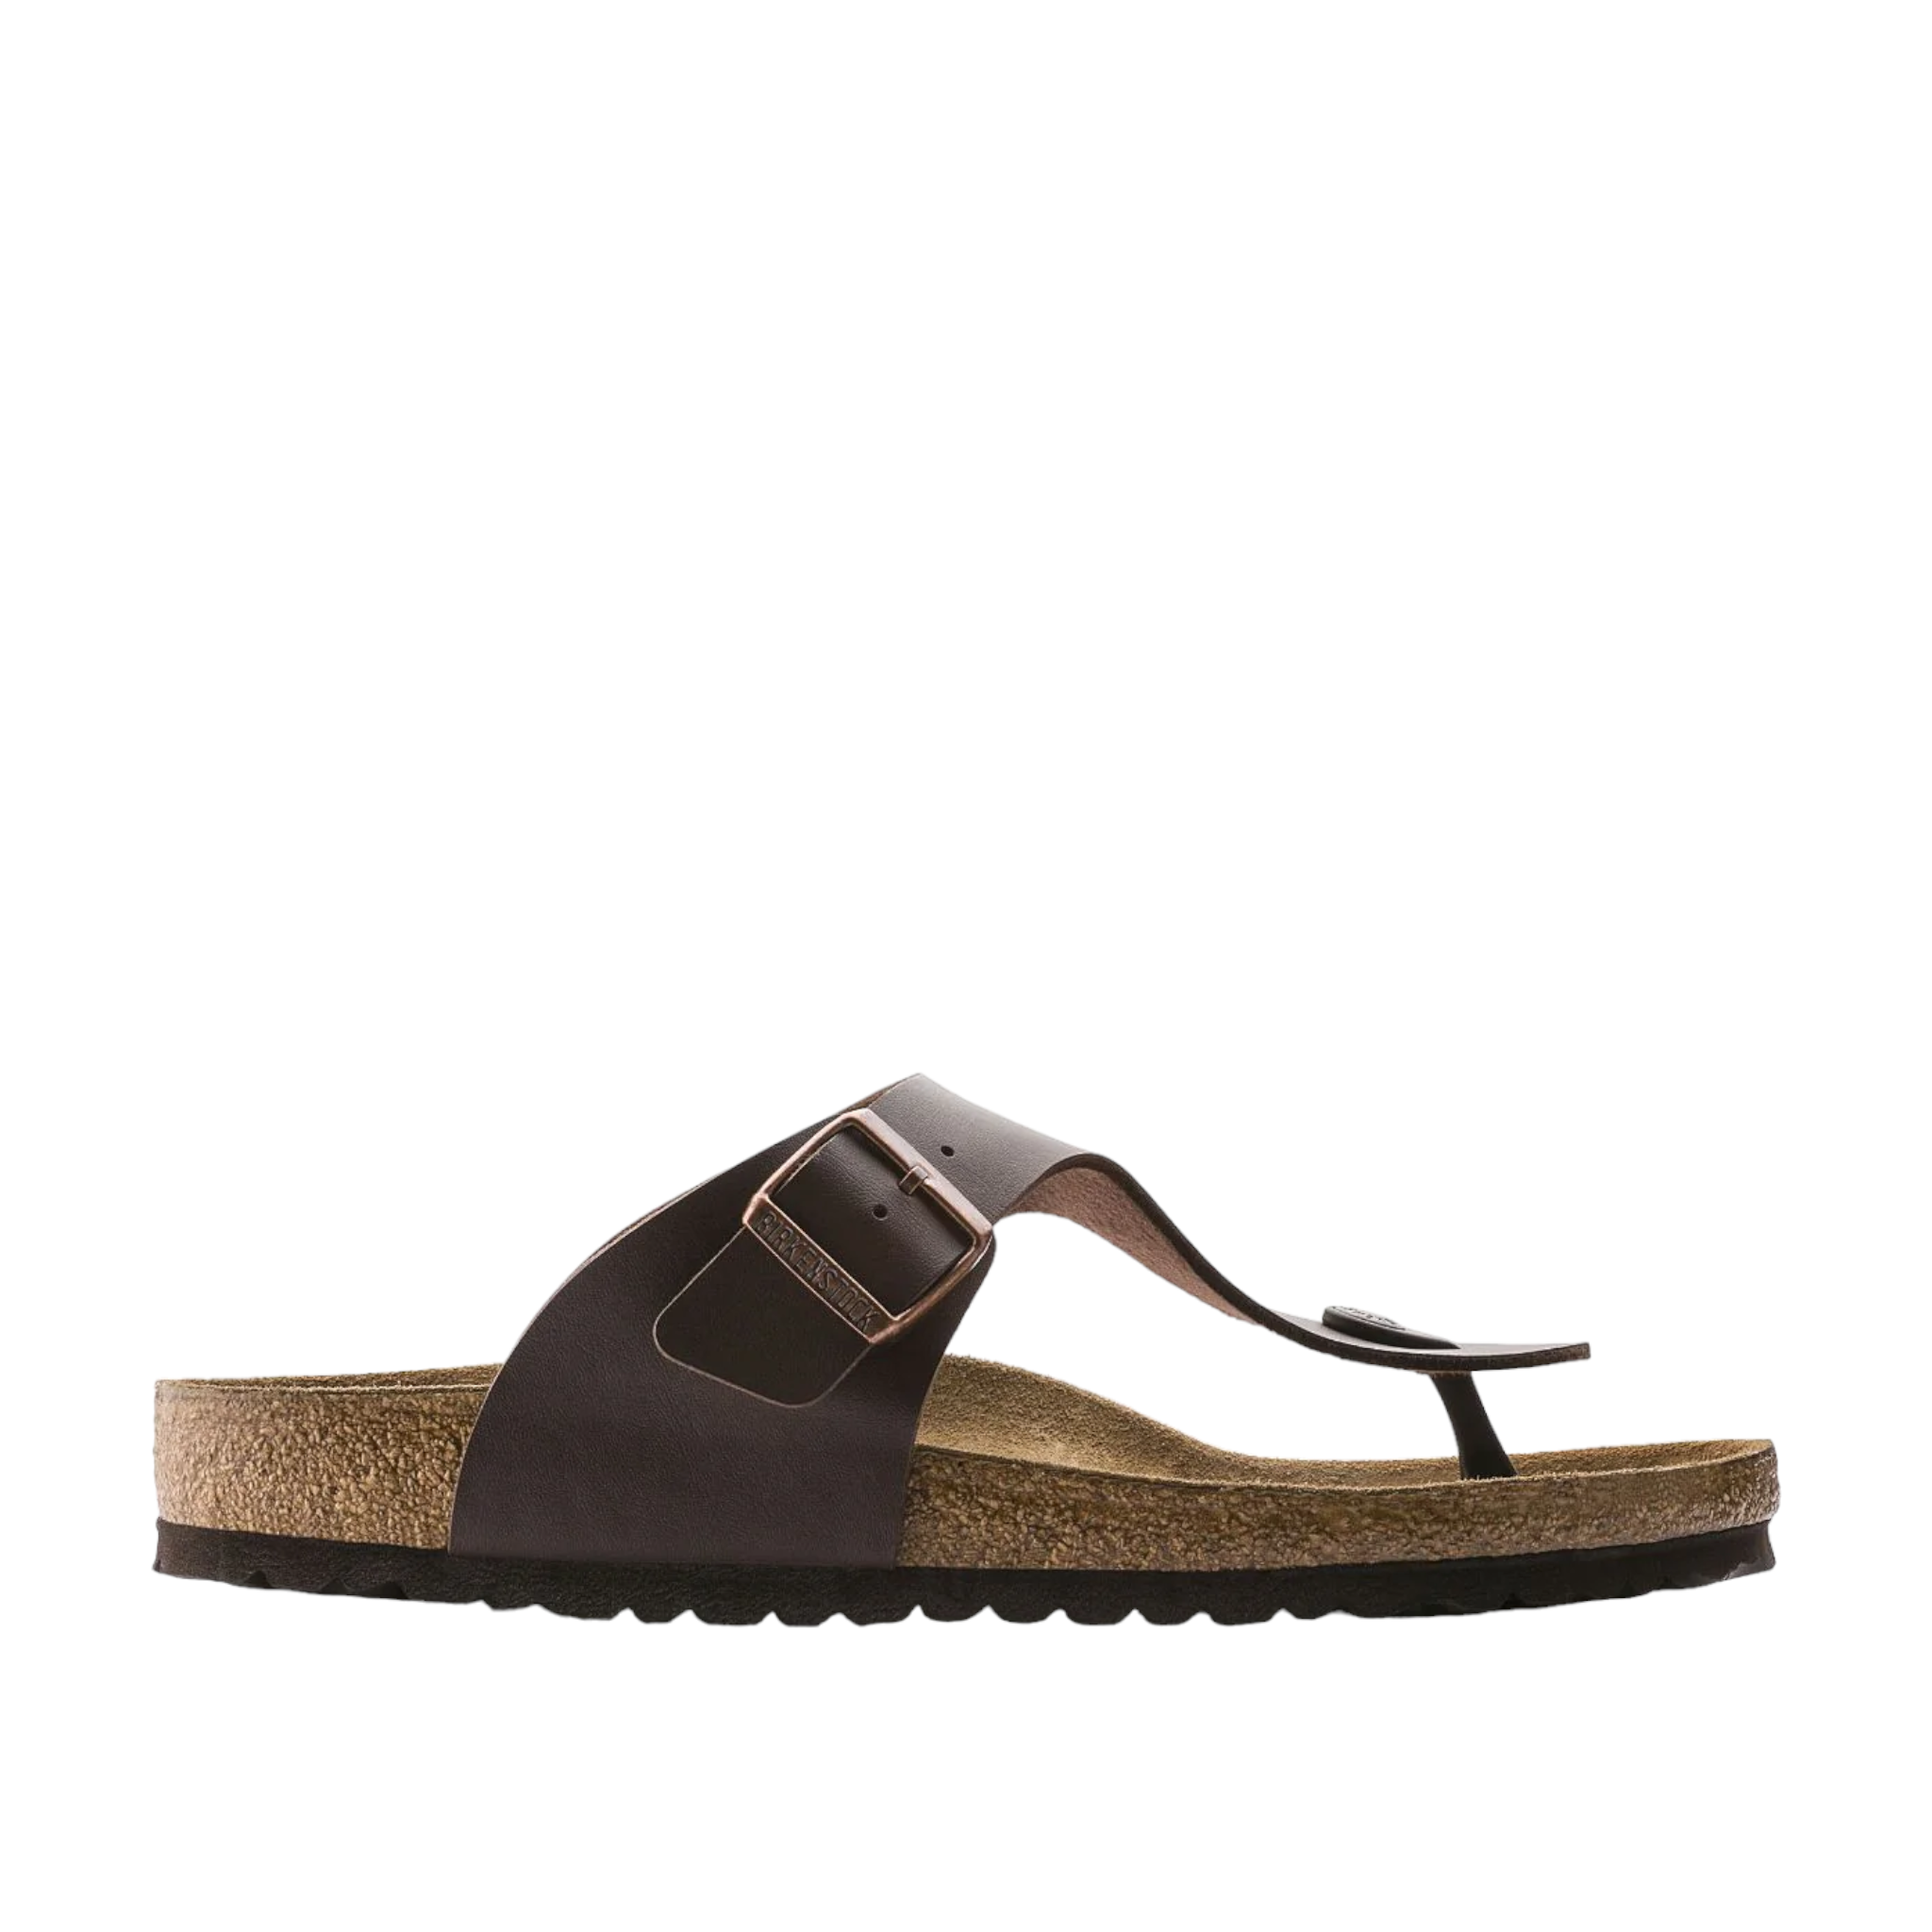 Ramses BF - shoe&amp;me - Birkenstock - Sandal - Jandals, Mens, Sandal, Summer